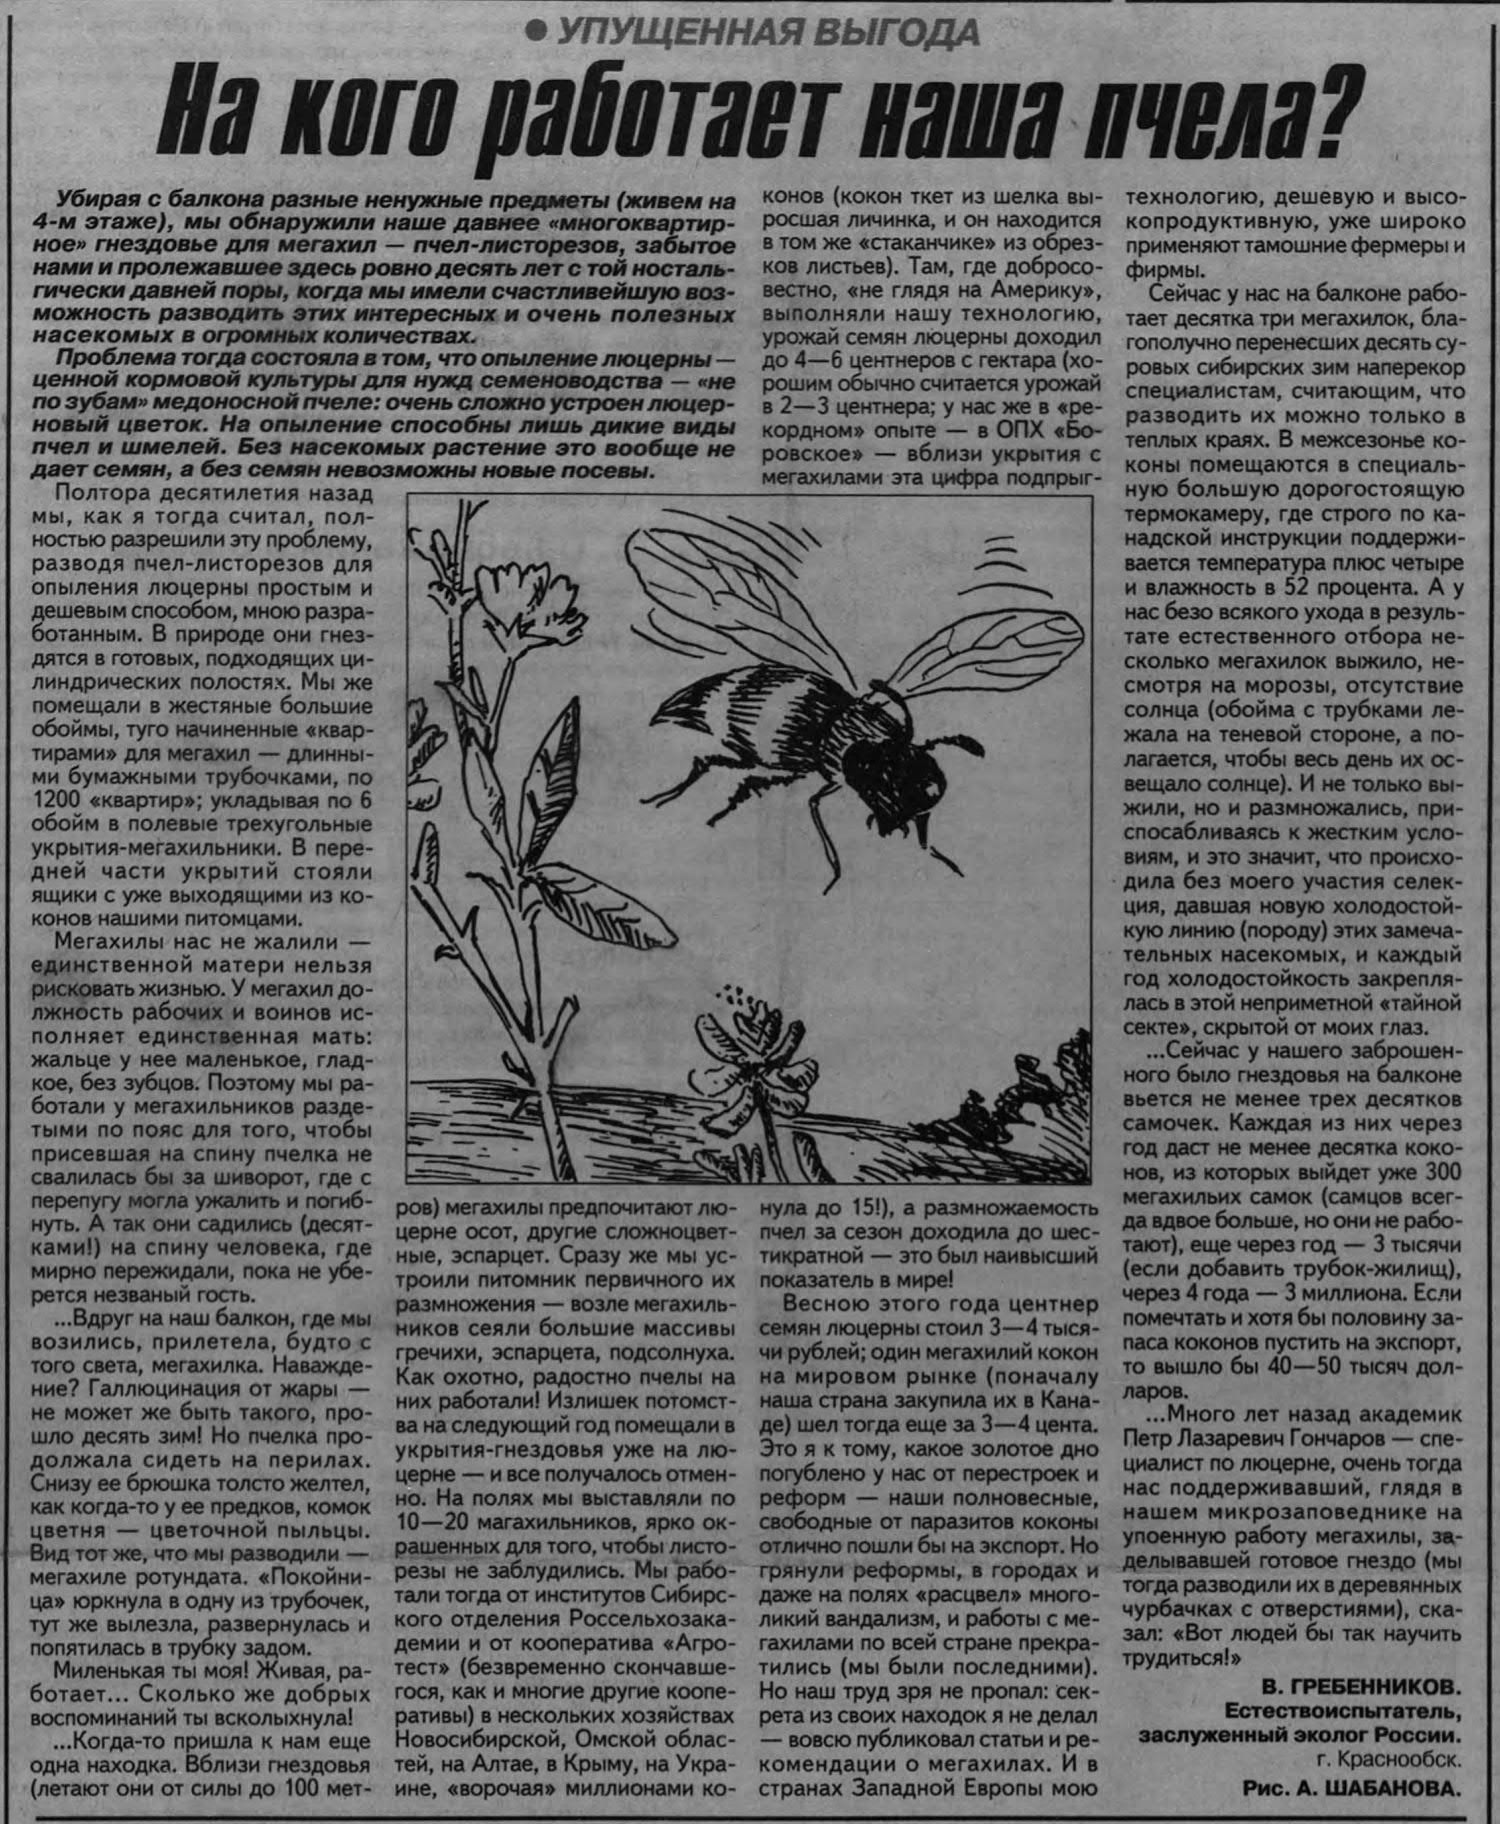 На кого работает наша пчела? В.С. Гребенников. Советская Сибирь (Новосибирск), 29.07.1999, №138 (23495), с.1. Фотокопия